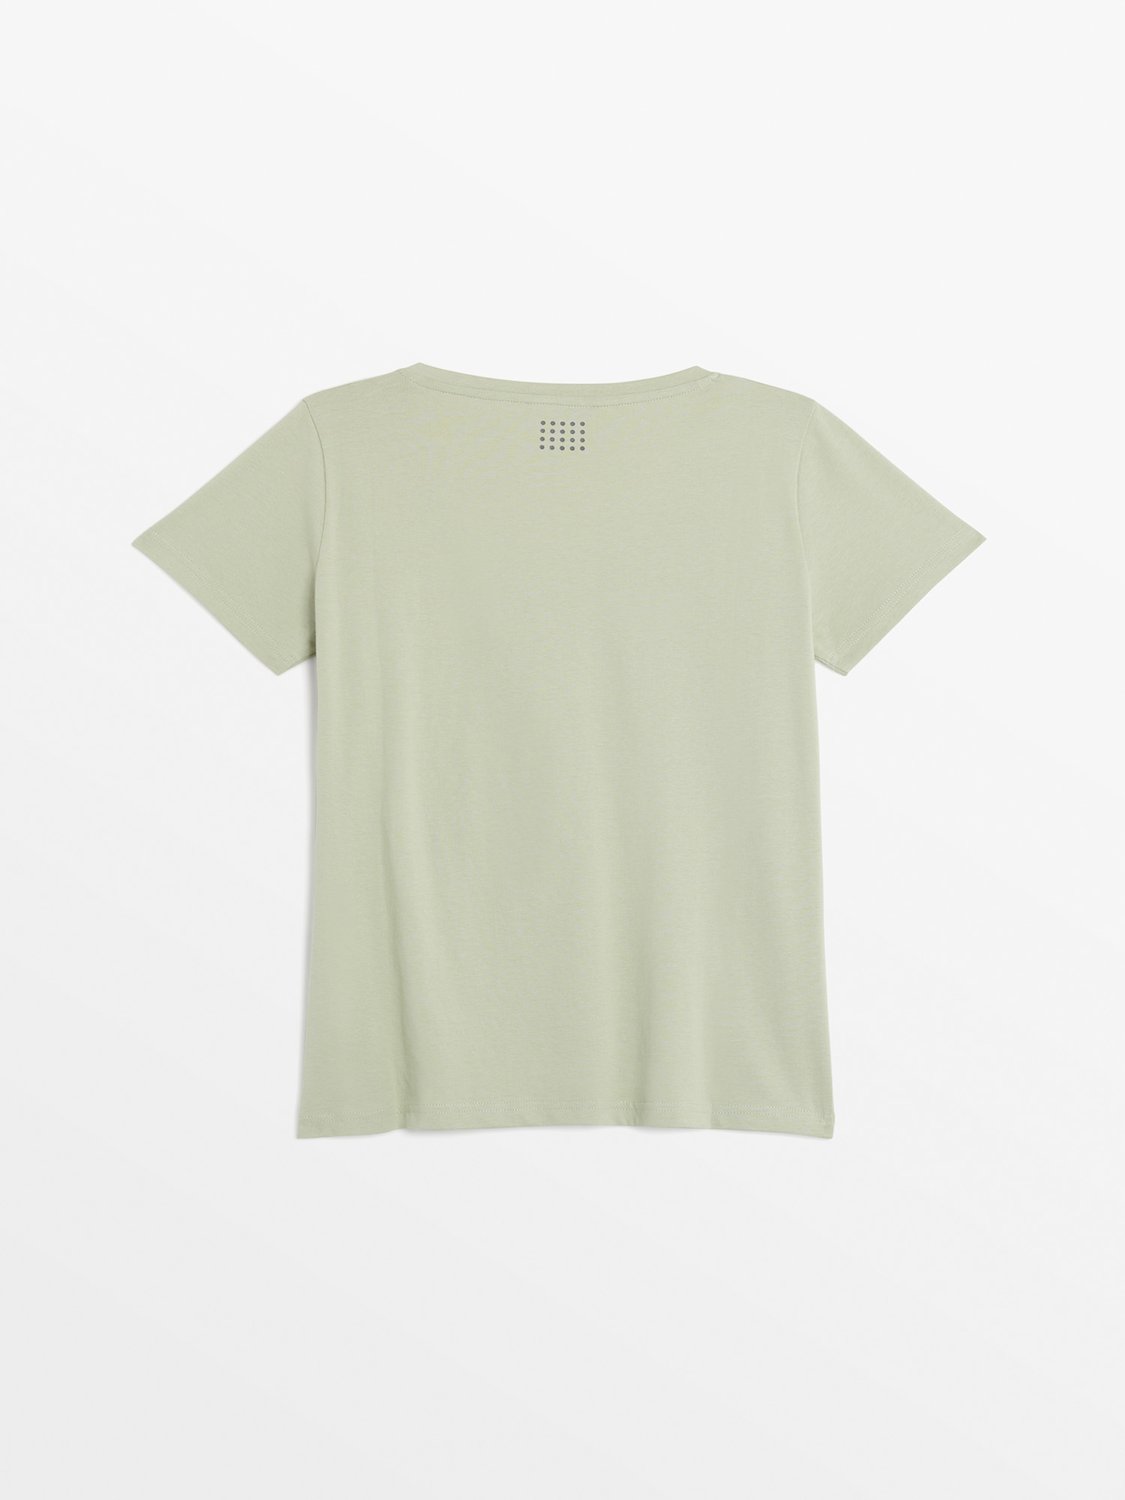 Tee Shirt Femme A Motif Vert